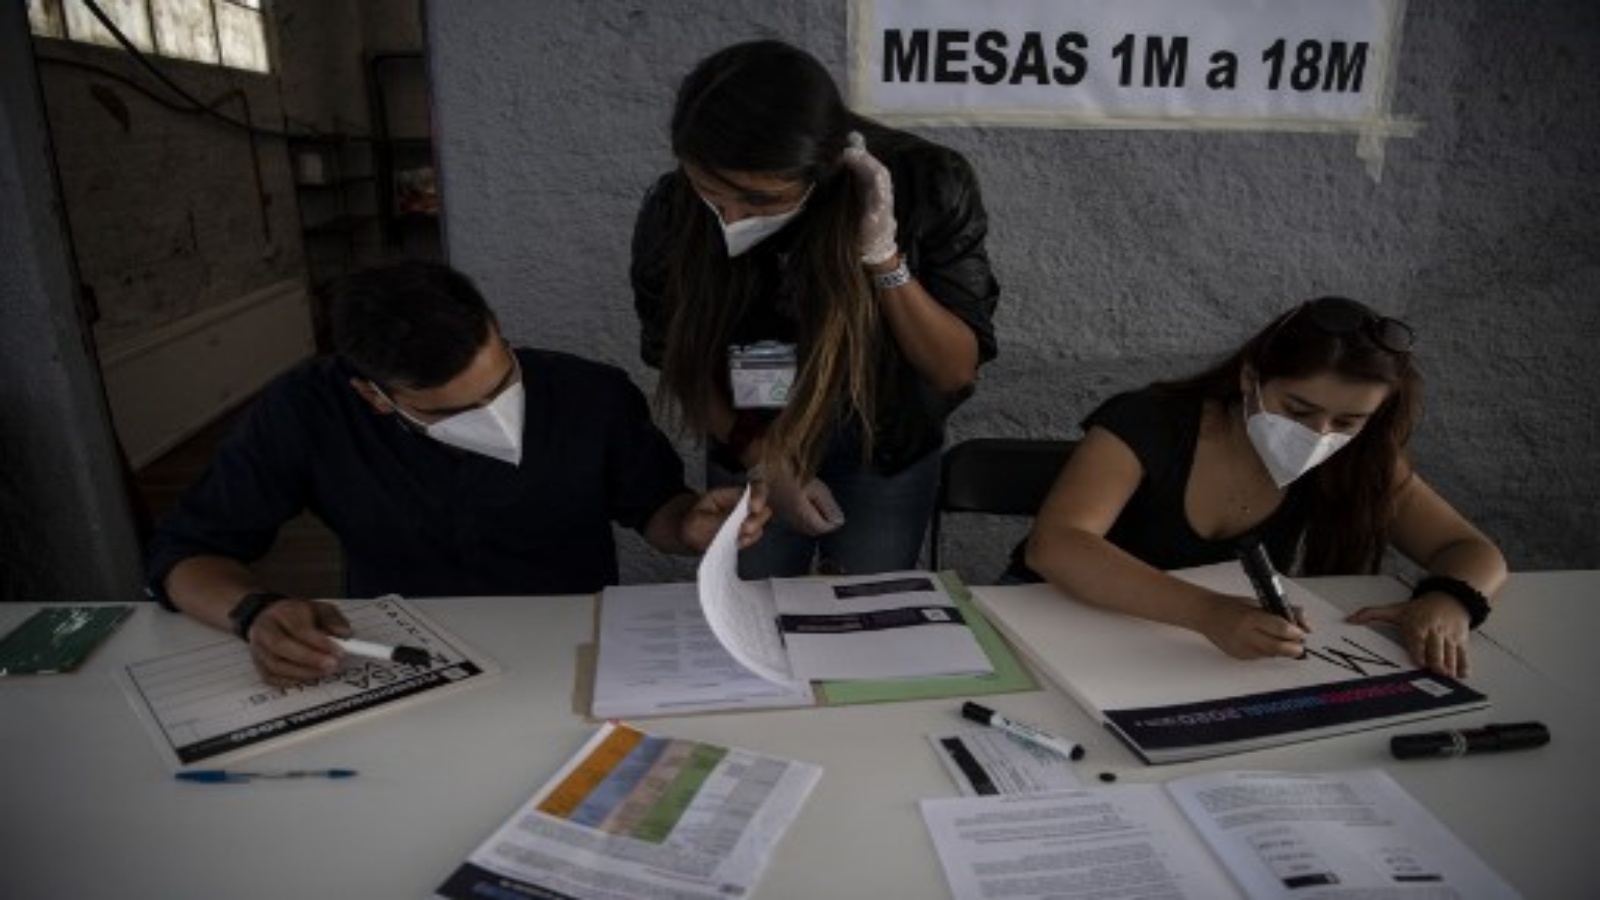 عمال الخدمة الانتخابية في تشيلي (سيرفيل) مركز اقتراع عشية التصويت على الاستفتاء الدستوري على مستوى البلاد في سانتياغو في 24 أكتوبر 2020